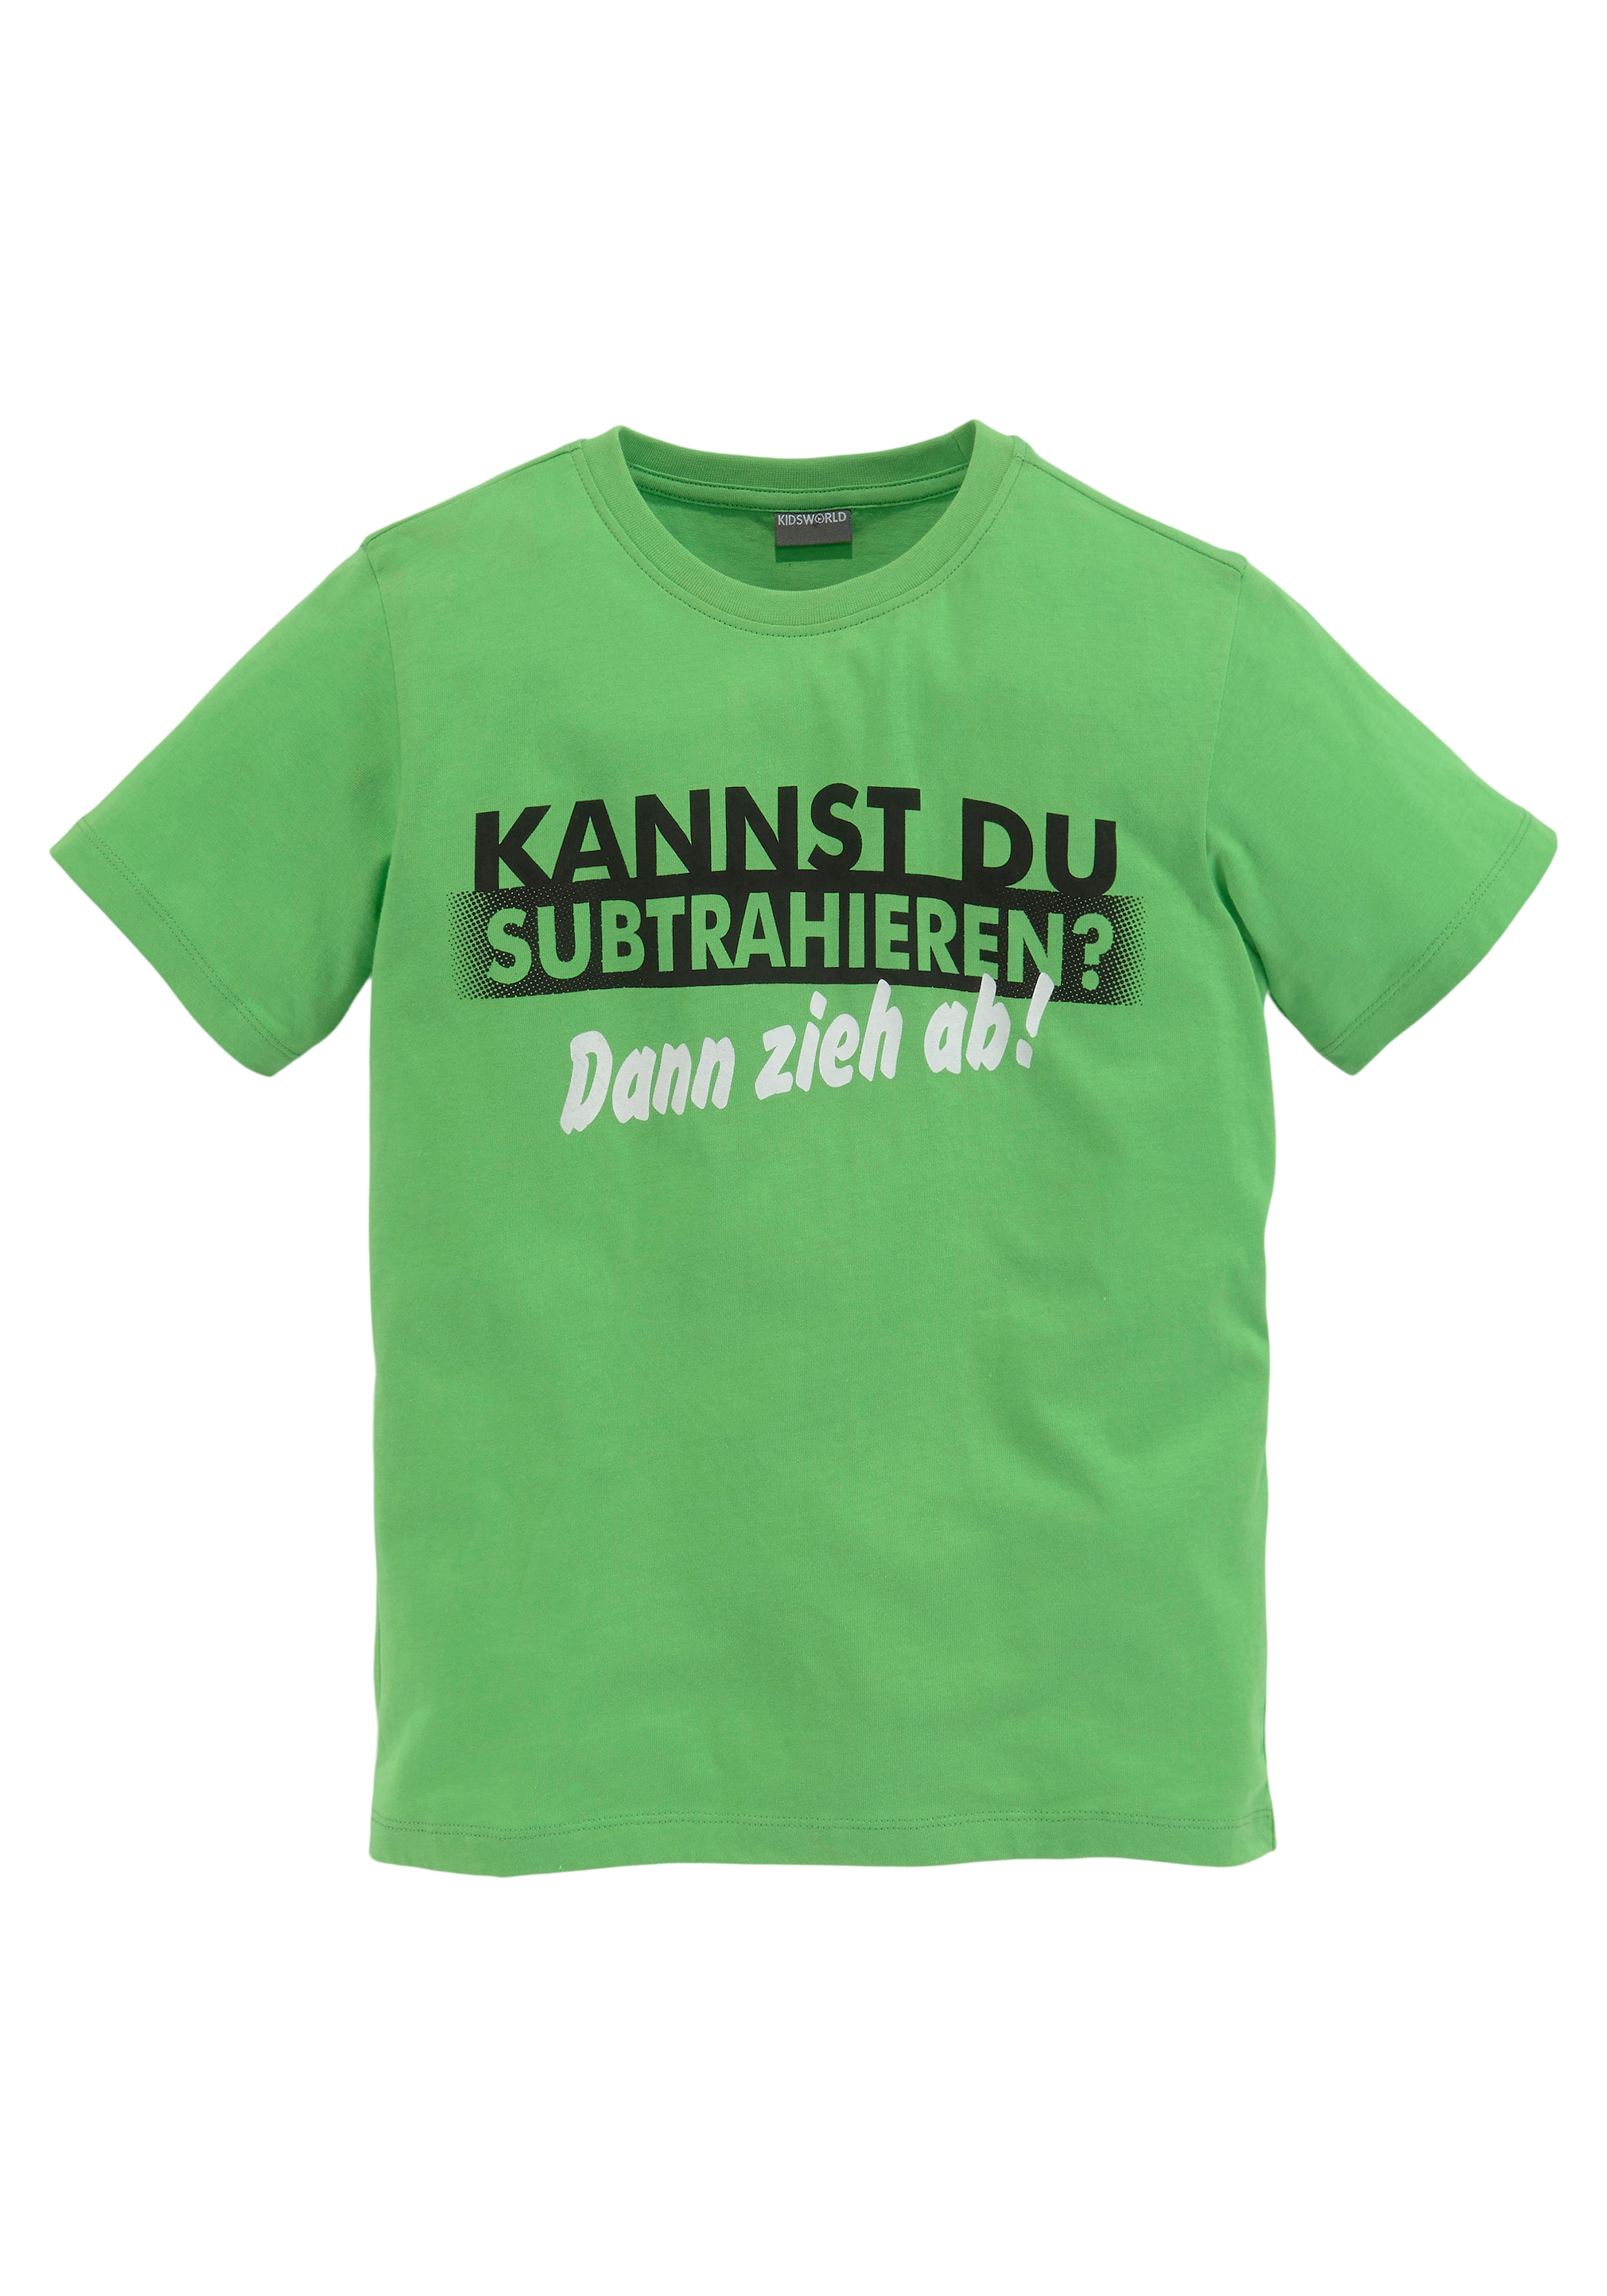 T-Shirt DU »KANNST online kaufen Spruch SUBTRAHIEREN?«, KIDSWORLD